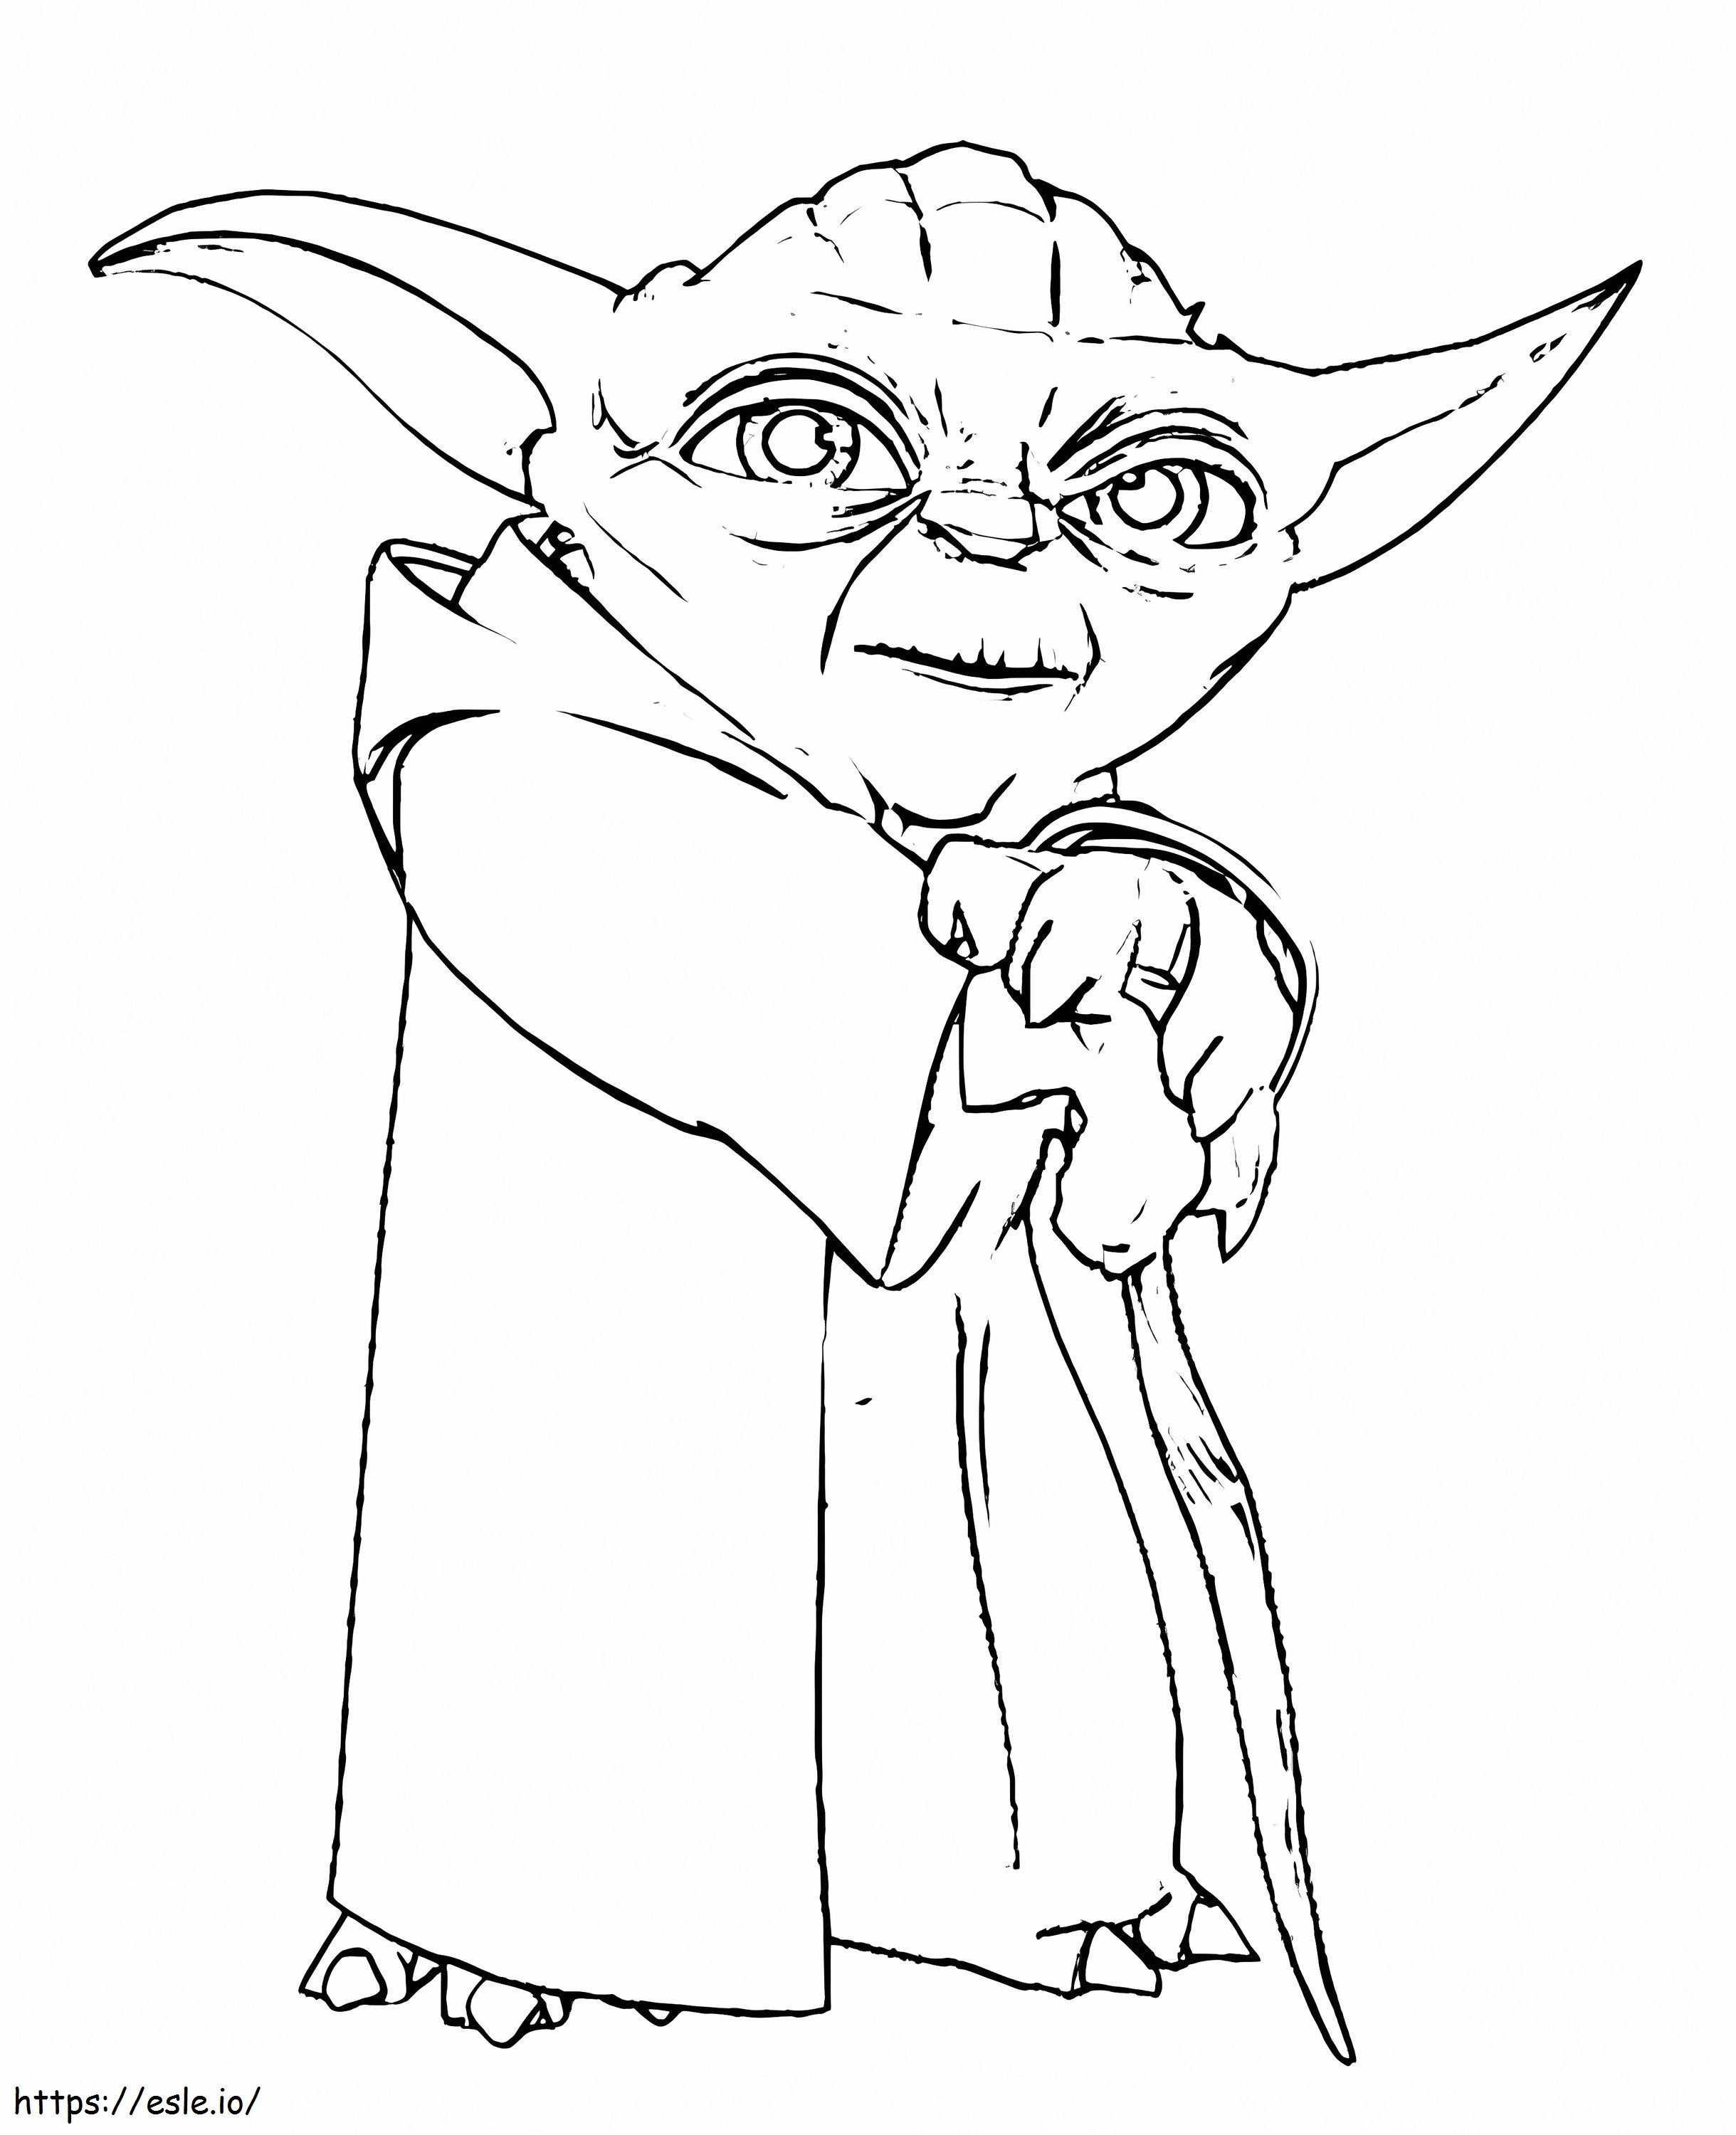 Star Wars Character Yoda coloring page